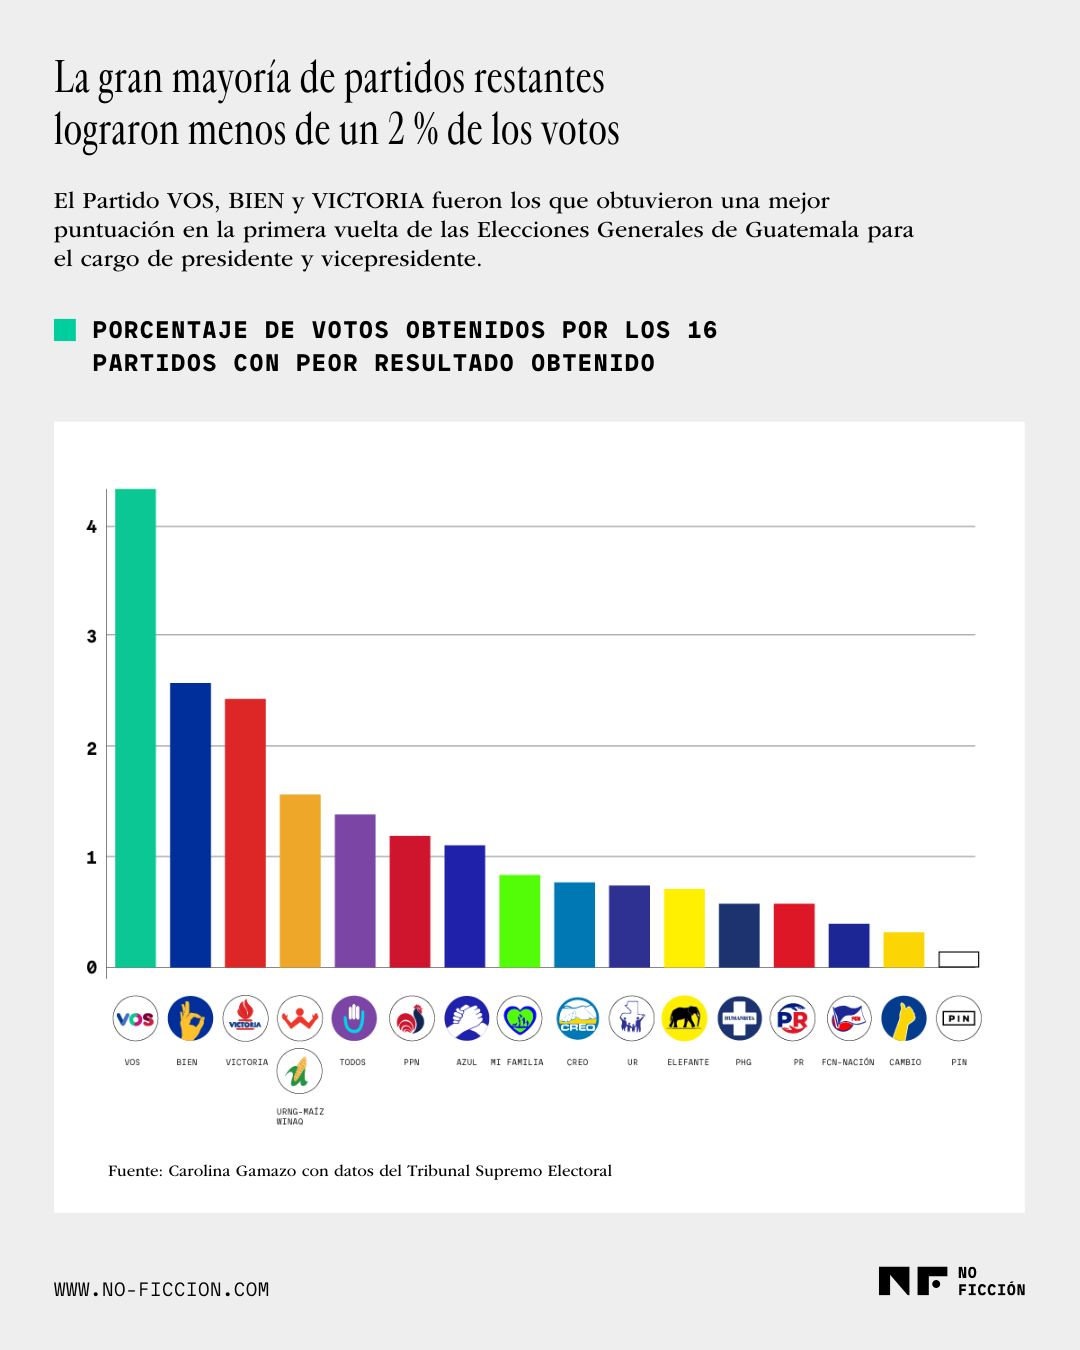 Gráfica de los resultados electorales de los partidos con menor puntuación en la primera vuelta.